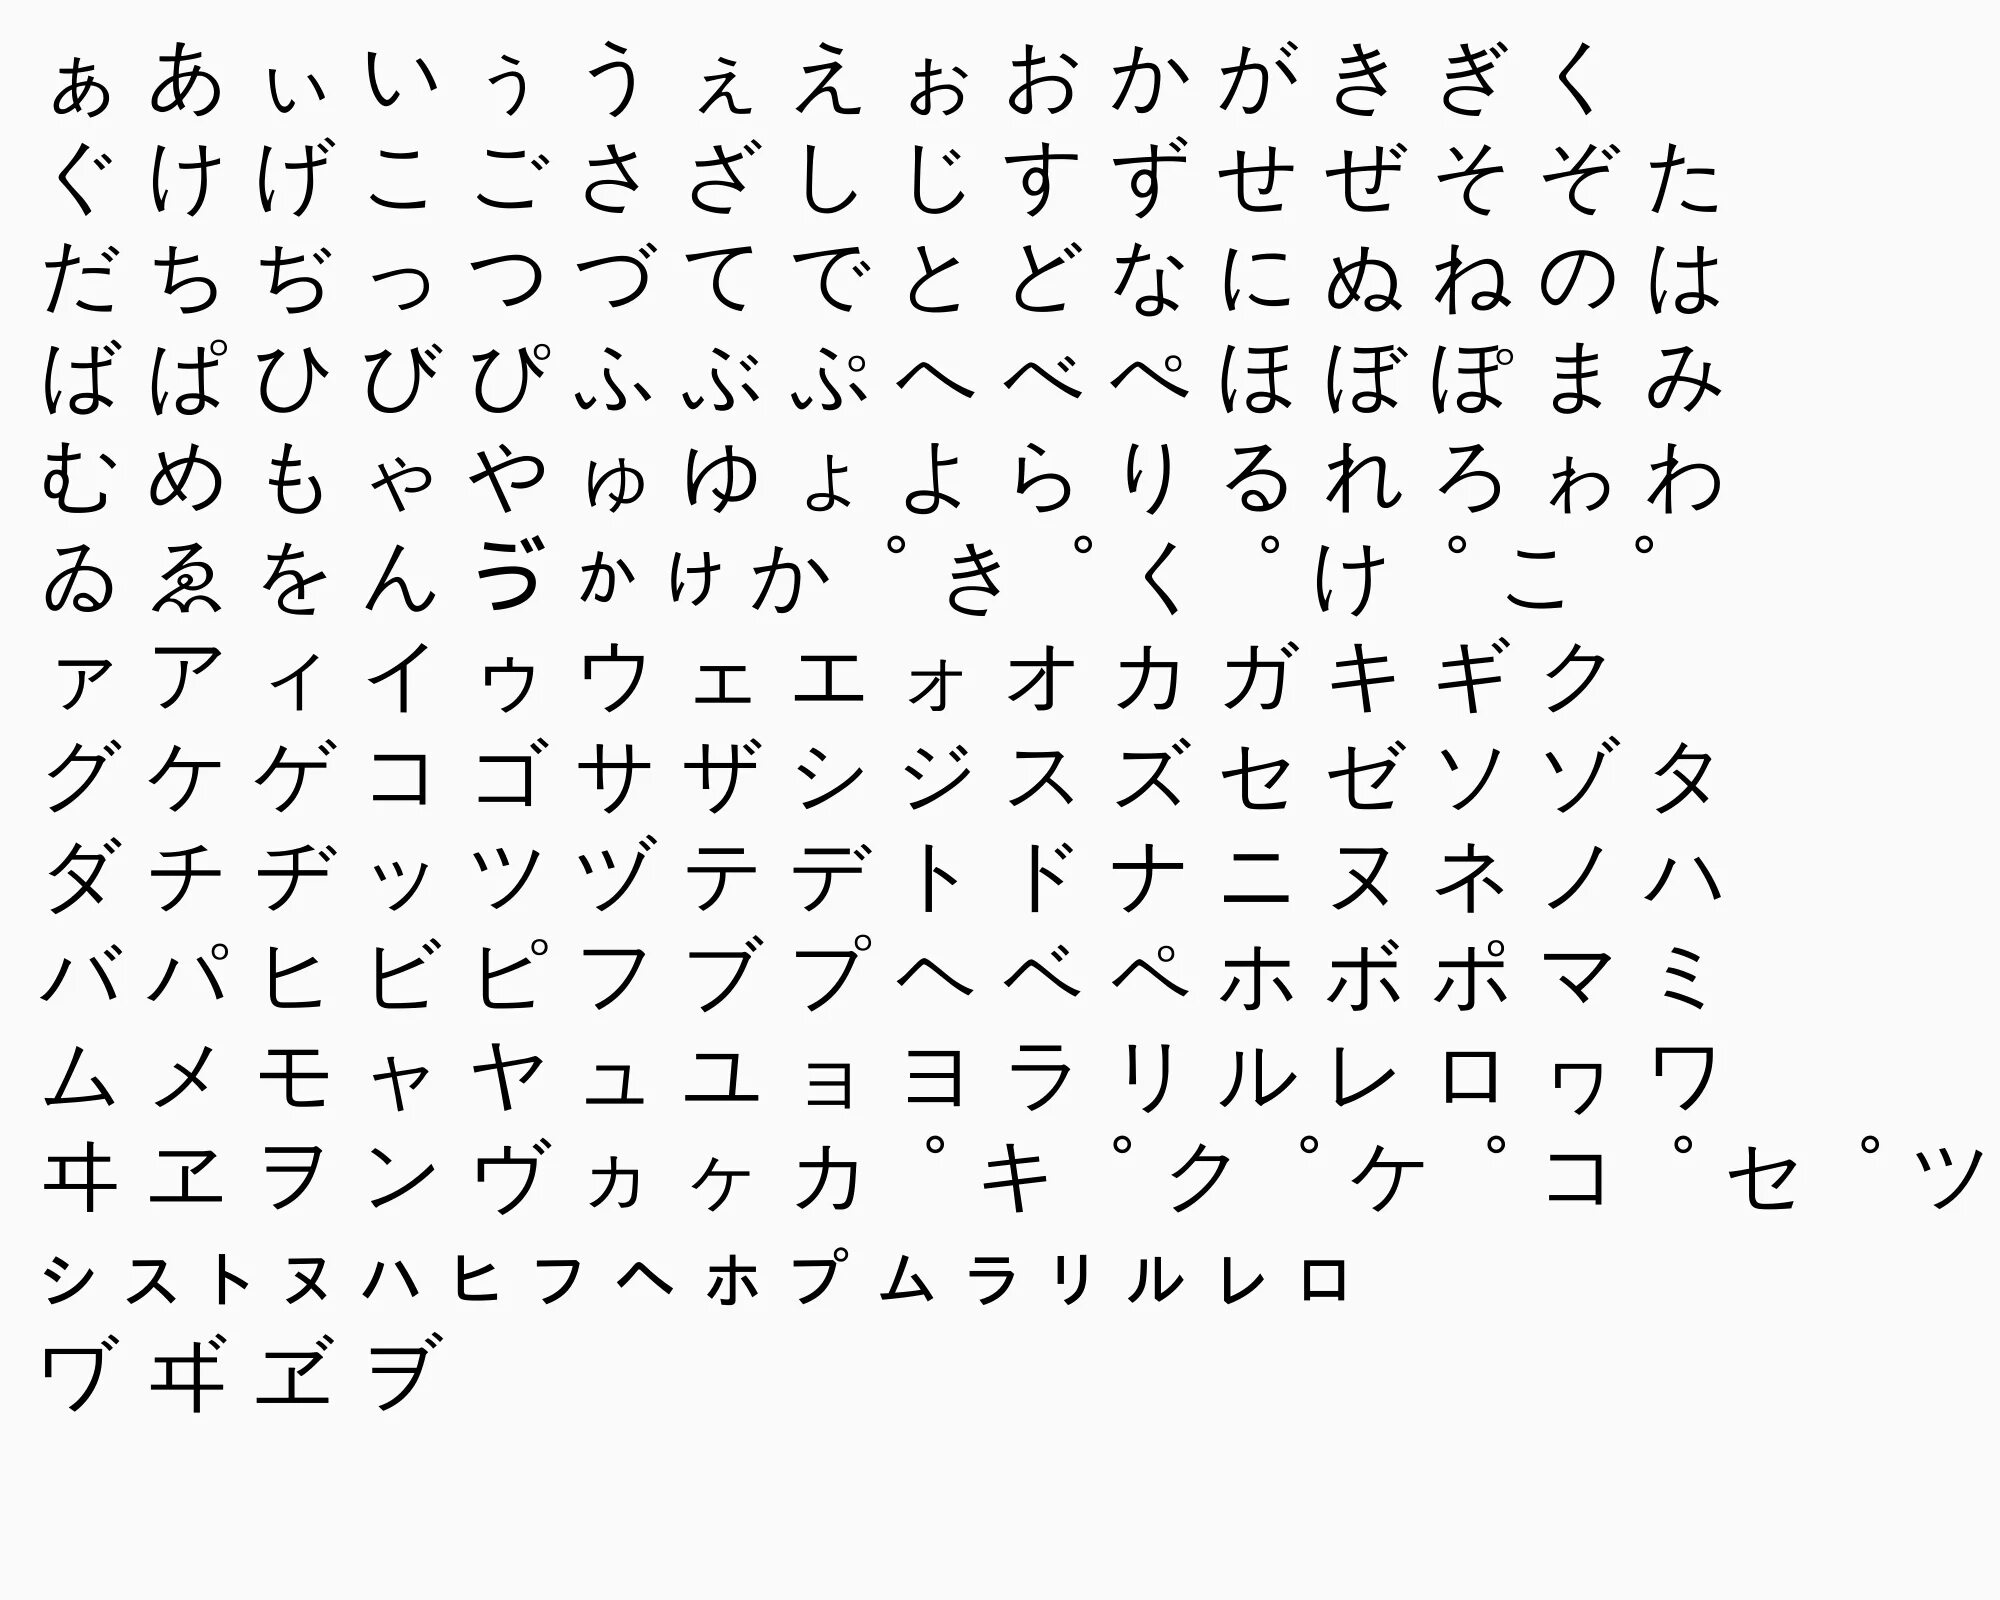 Китайский алфавит текст. Китайский алфавит хирагана. Пропись японского алфавита хирагана. Японские прописи катакана. Китайский алфавит катакана.